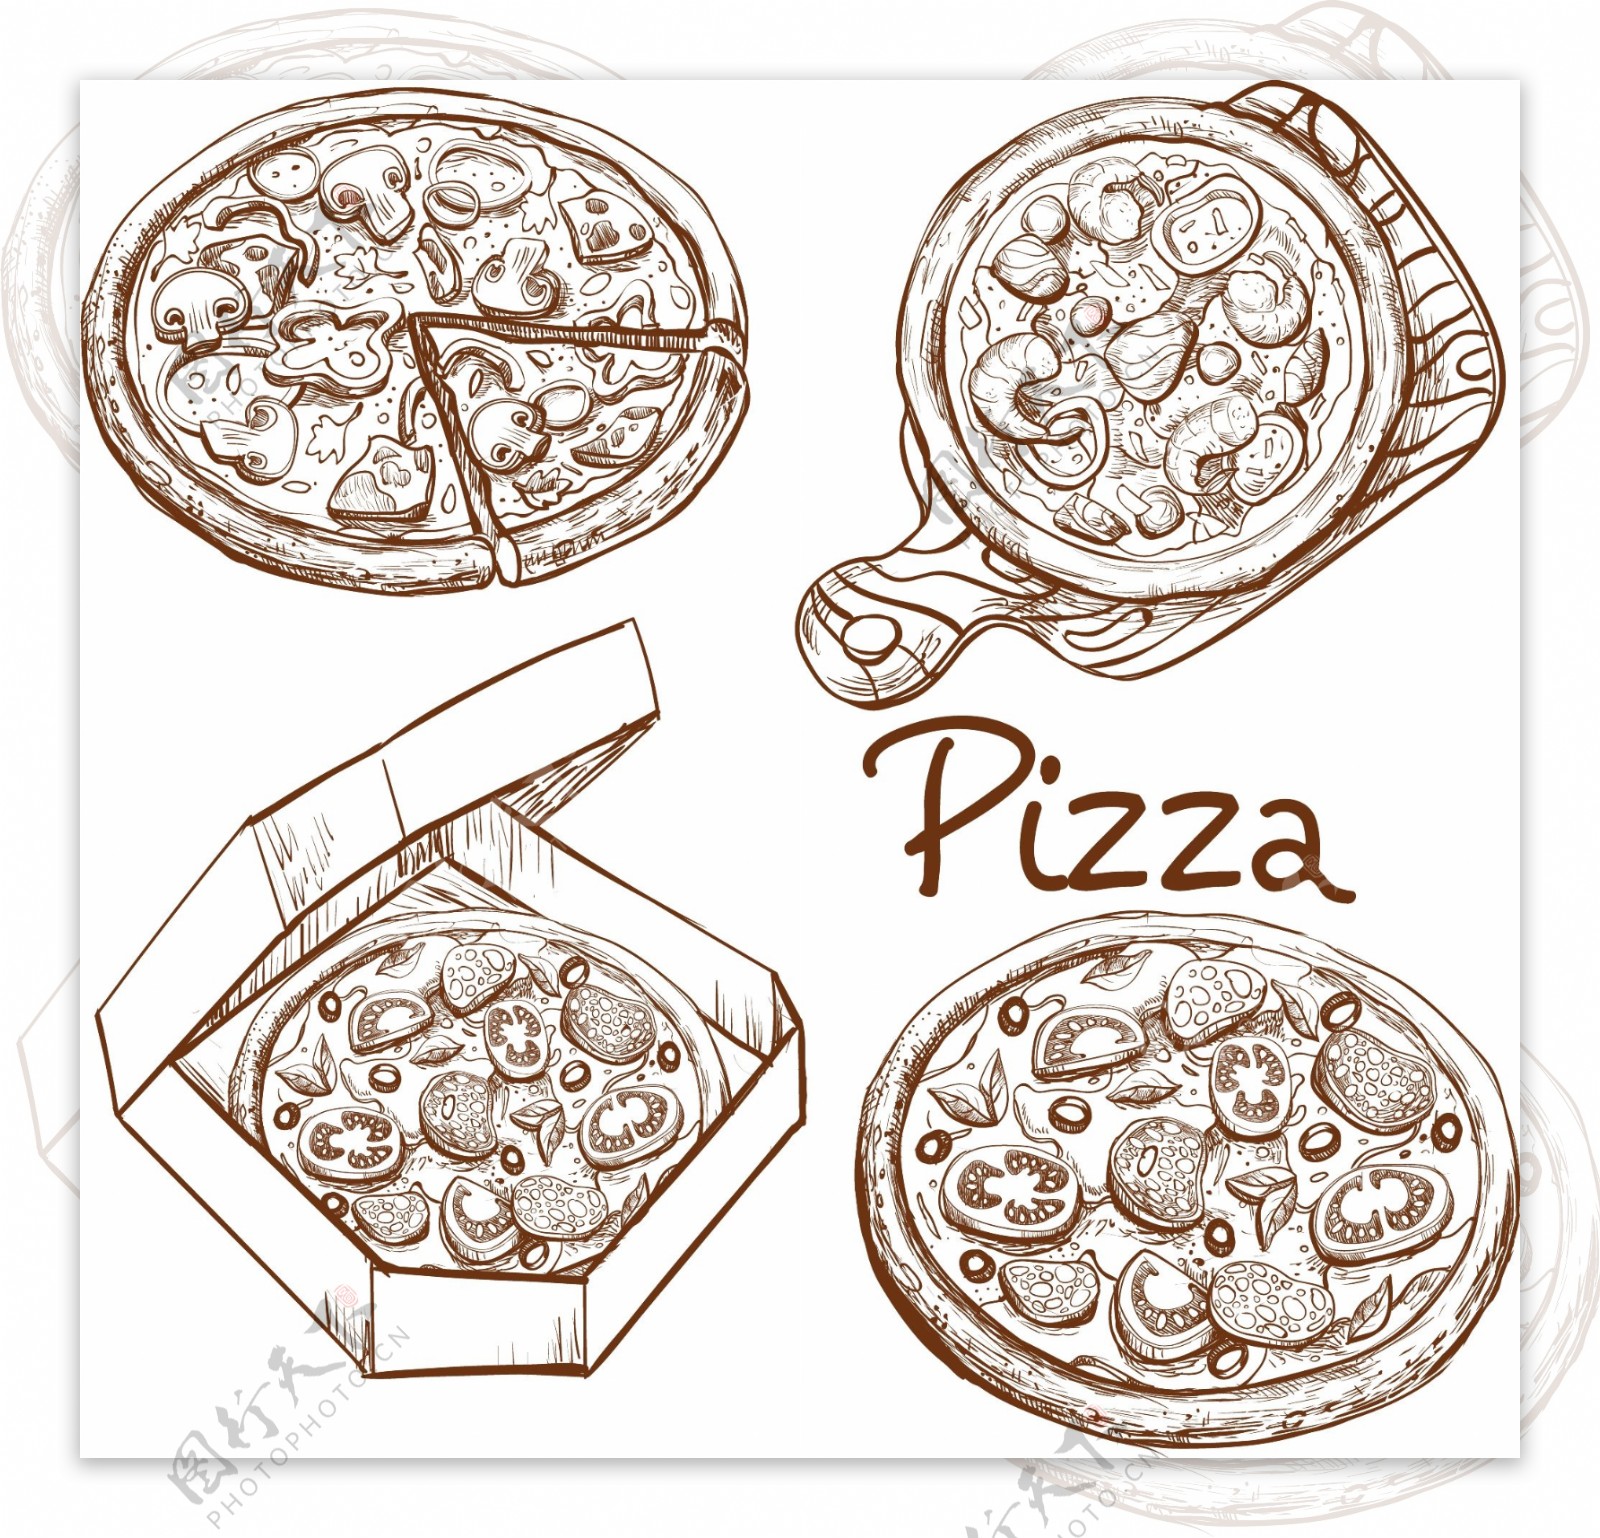 一组手绘披萨插图